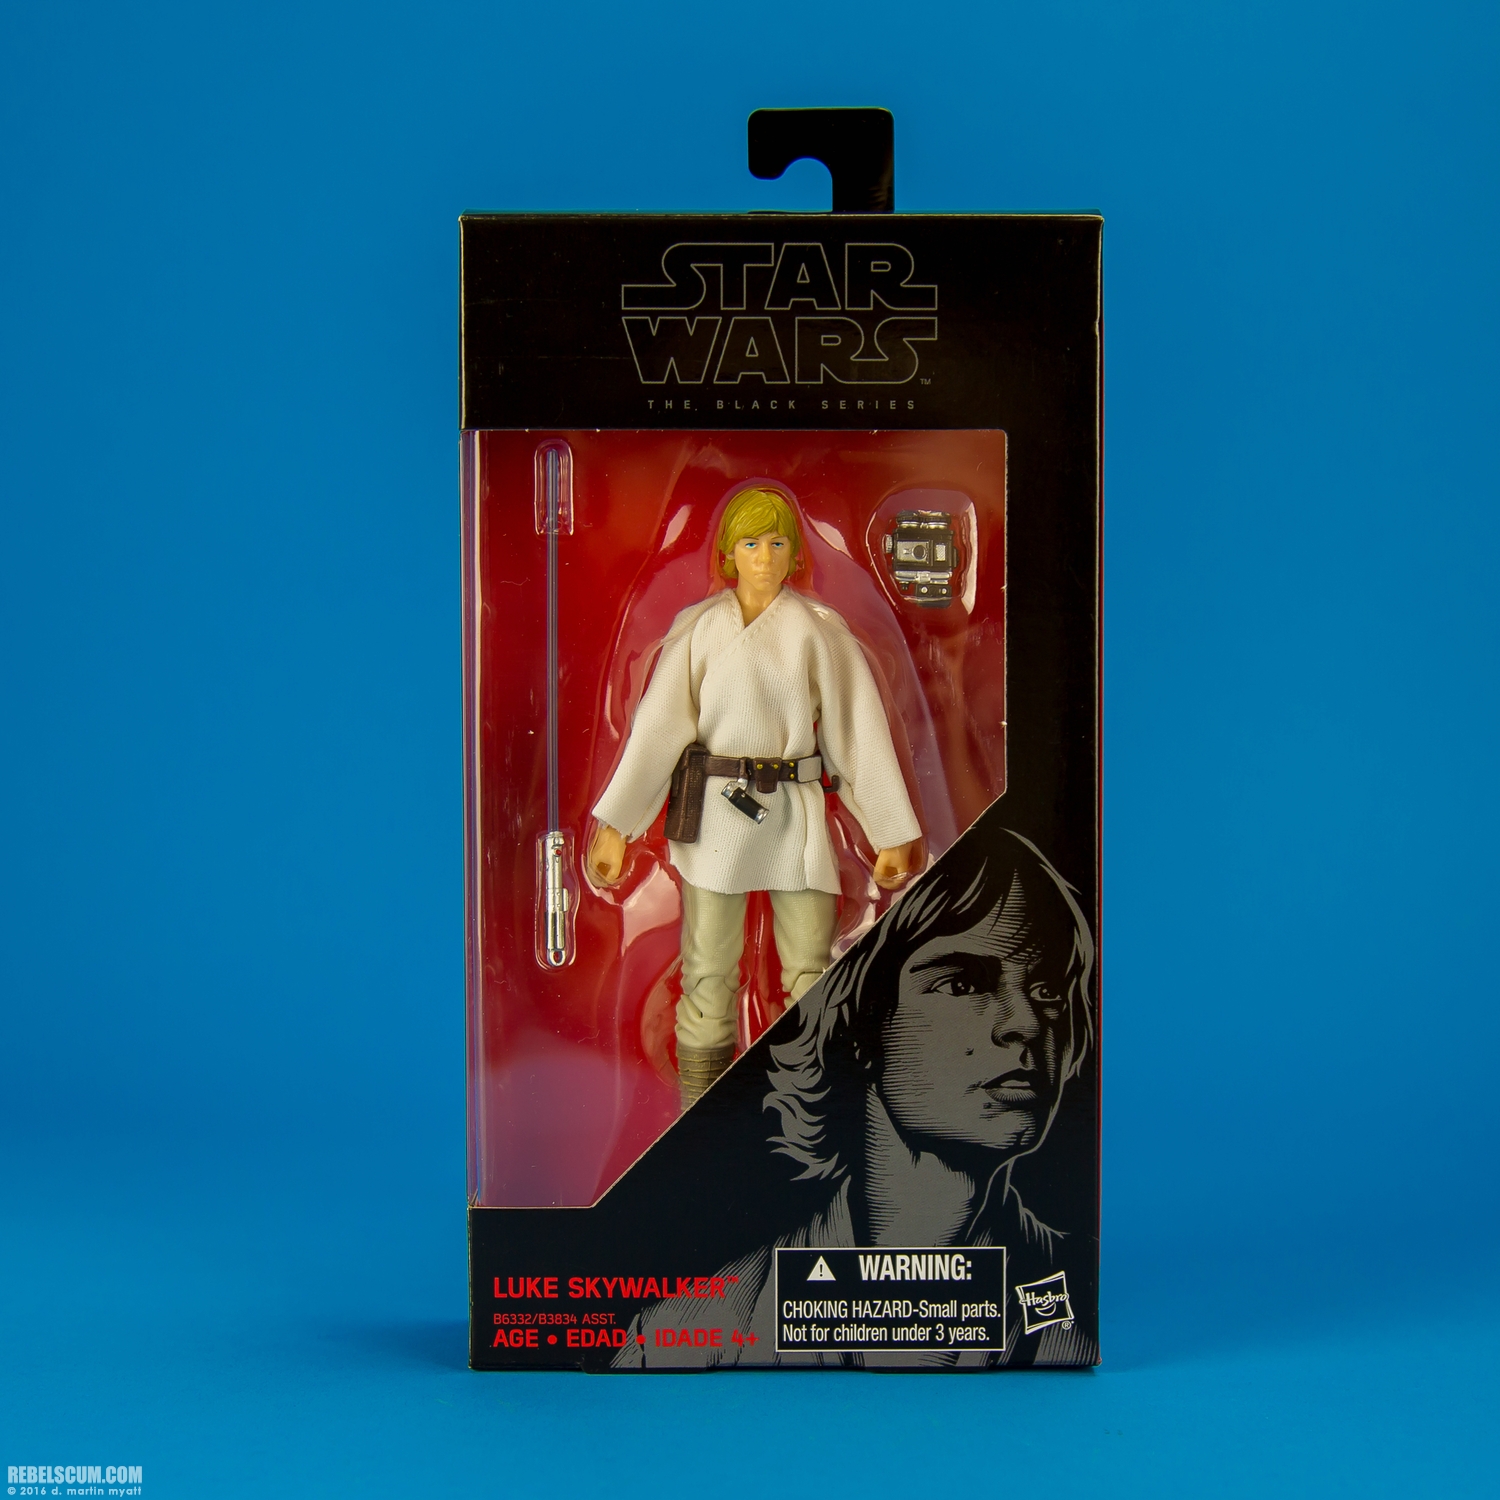 Luke-Skywalker-21-The-Black-Series-Star-Wars-Rebels-Hasbro-014.jpg